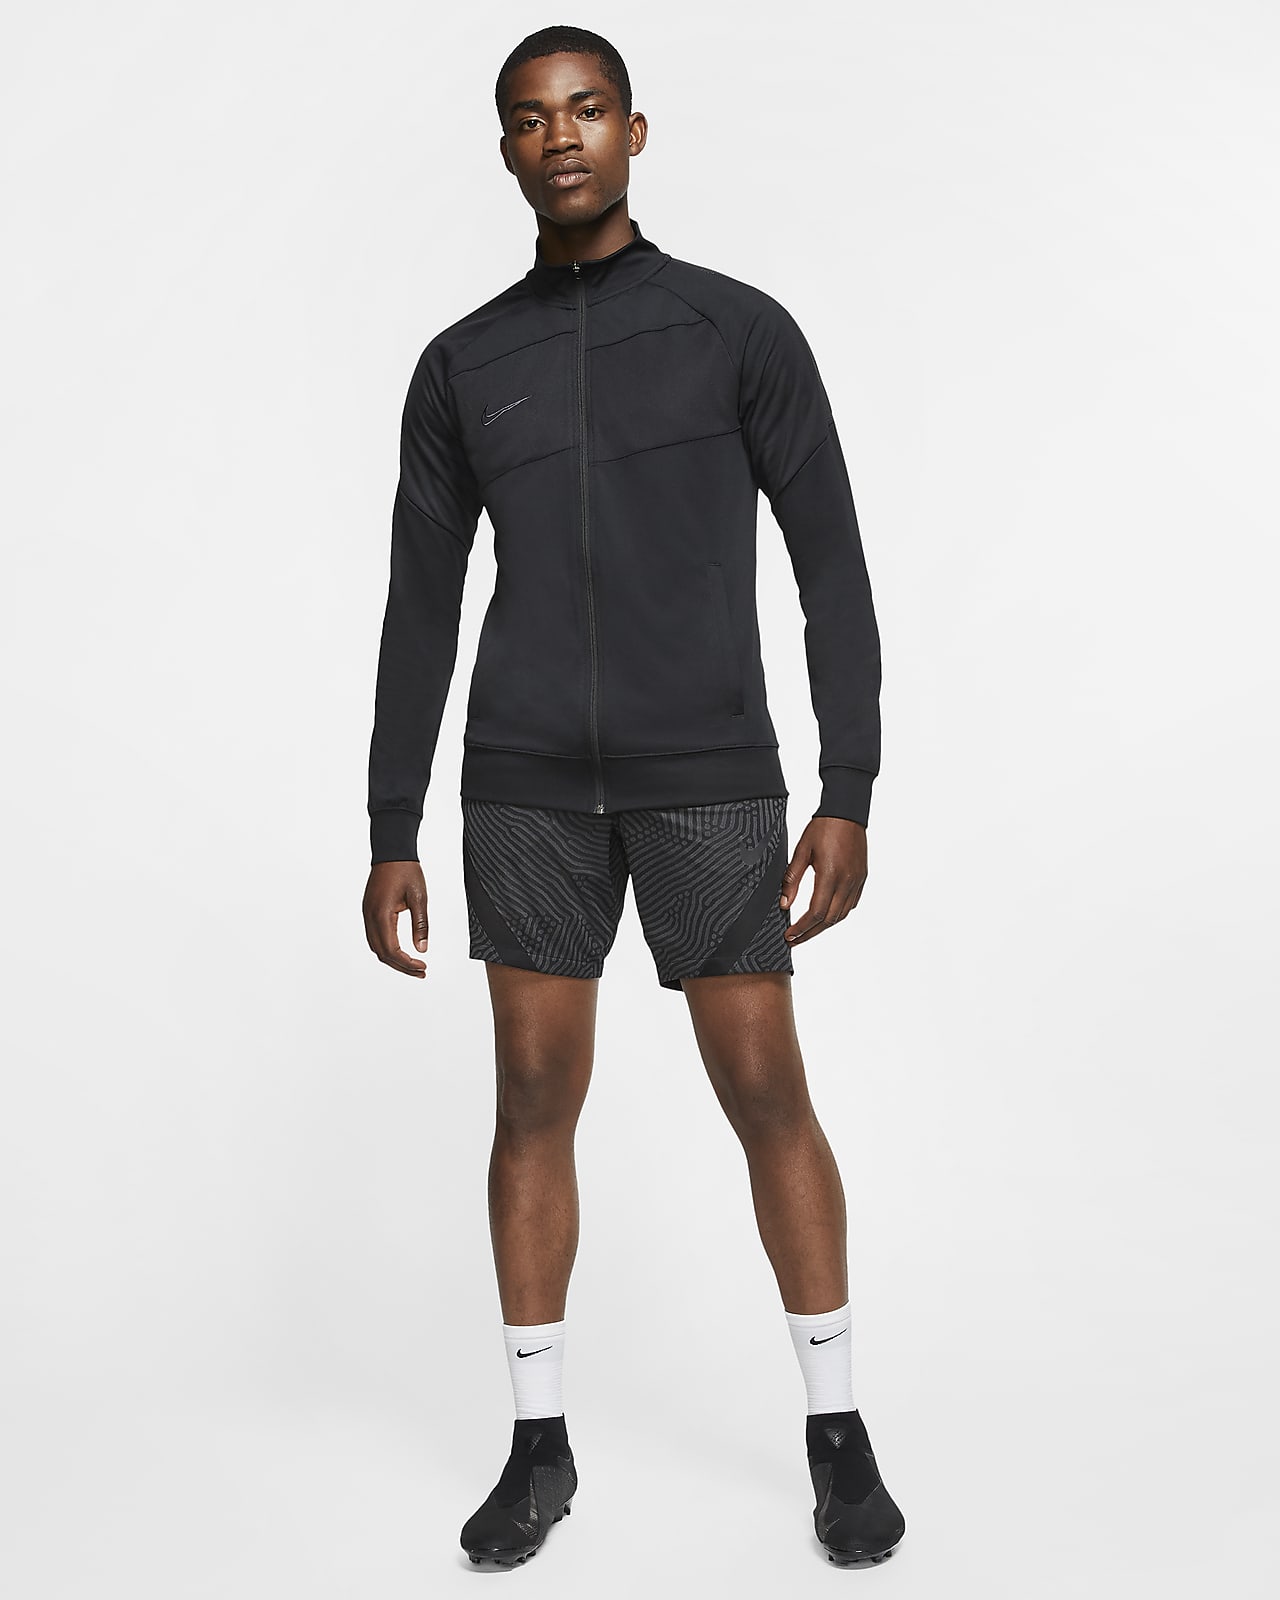 Nike公式 ナイキ Dri Fit ストライク メンズ サッカーショートパンツ オンラインストア 通販サイト